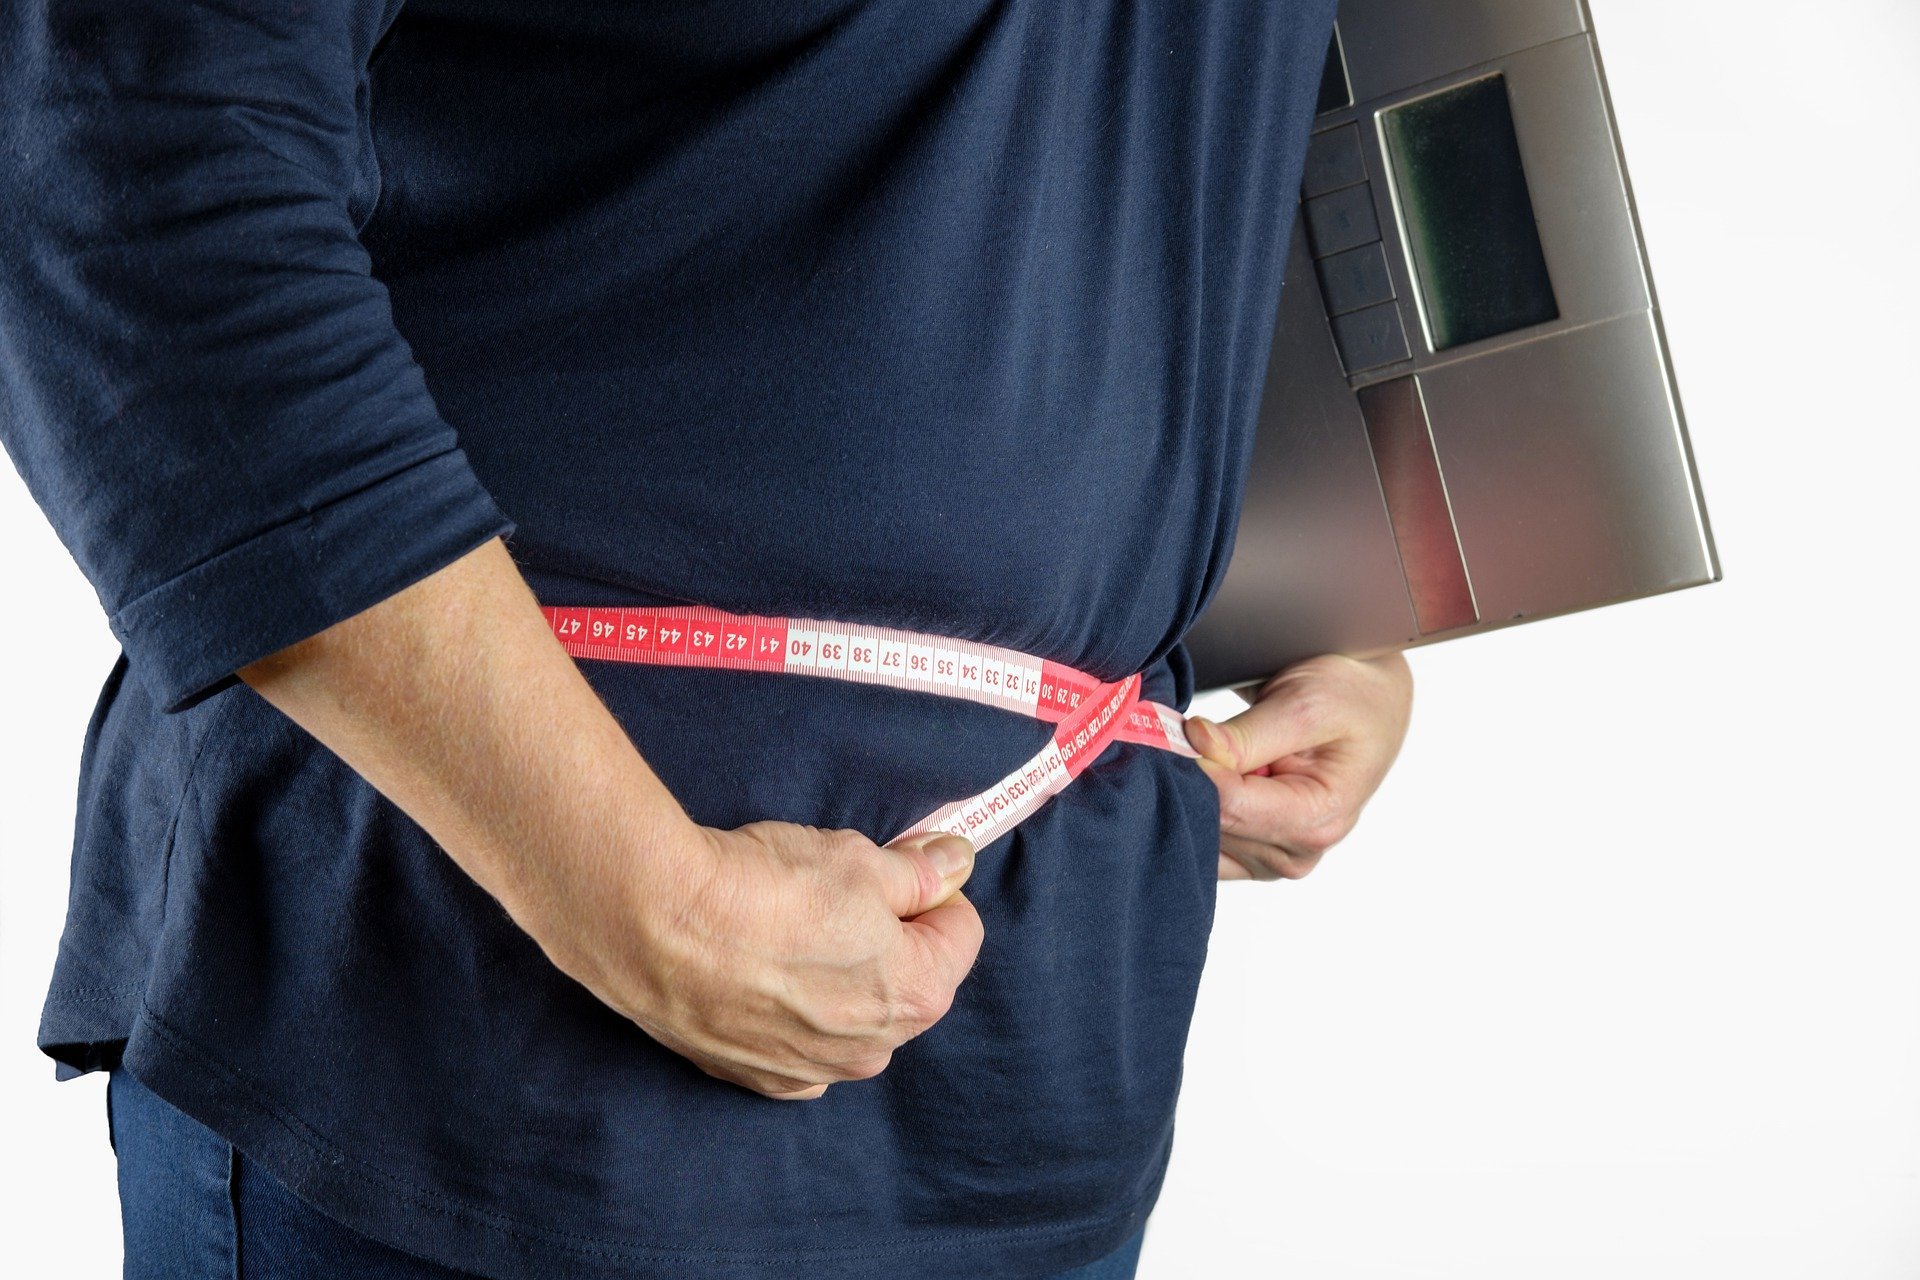 "تزيد الوزن".. أطعمة صحية تدخل في أنظمة الحميات الغذائية بشكل خاطئ